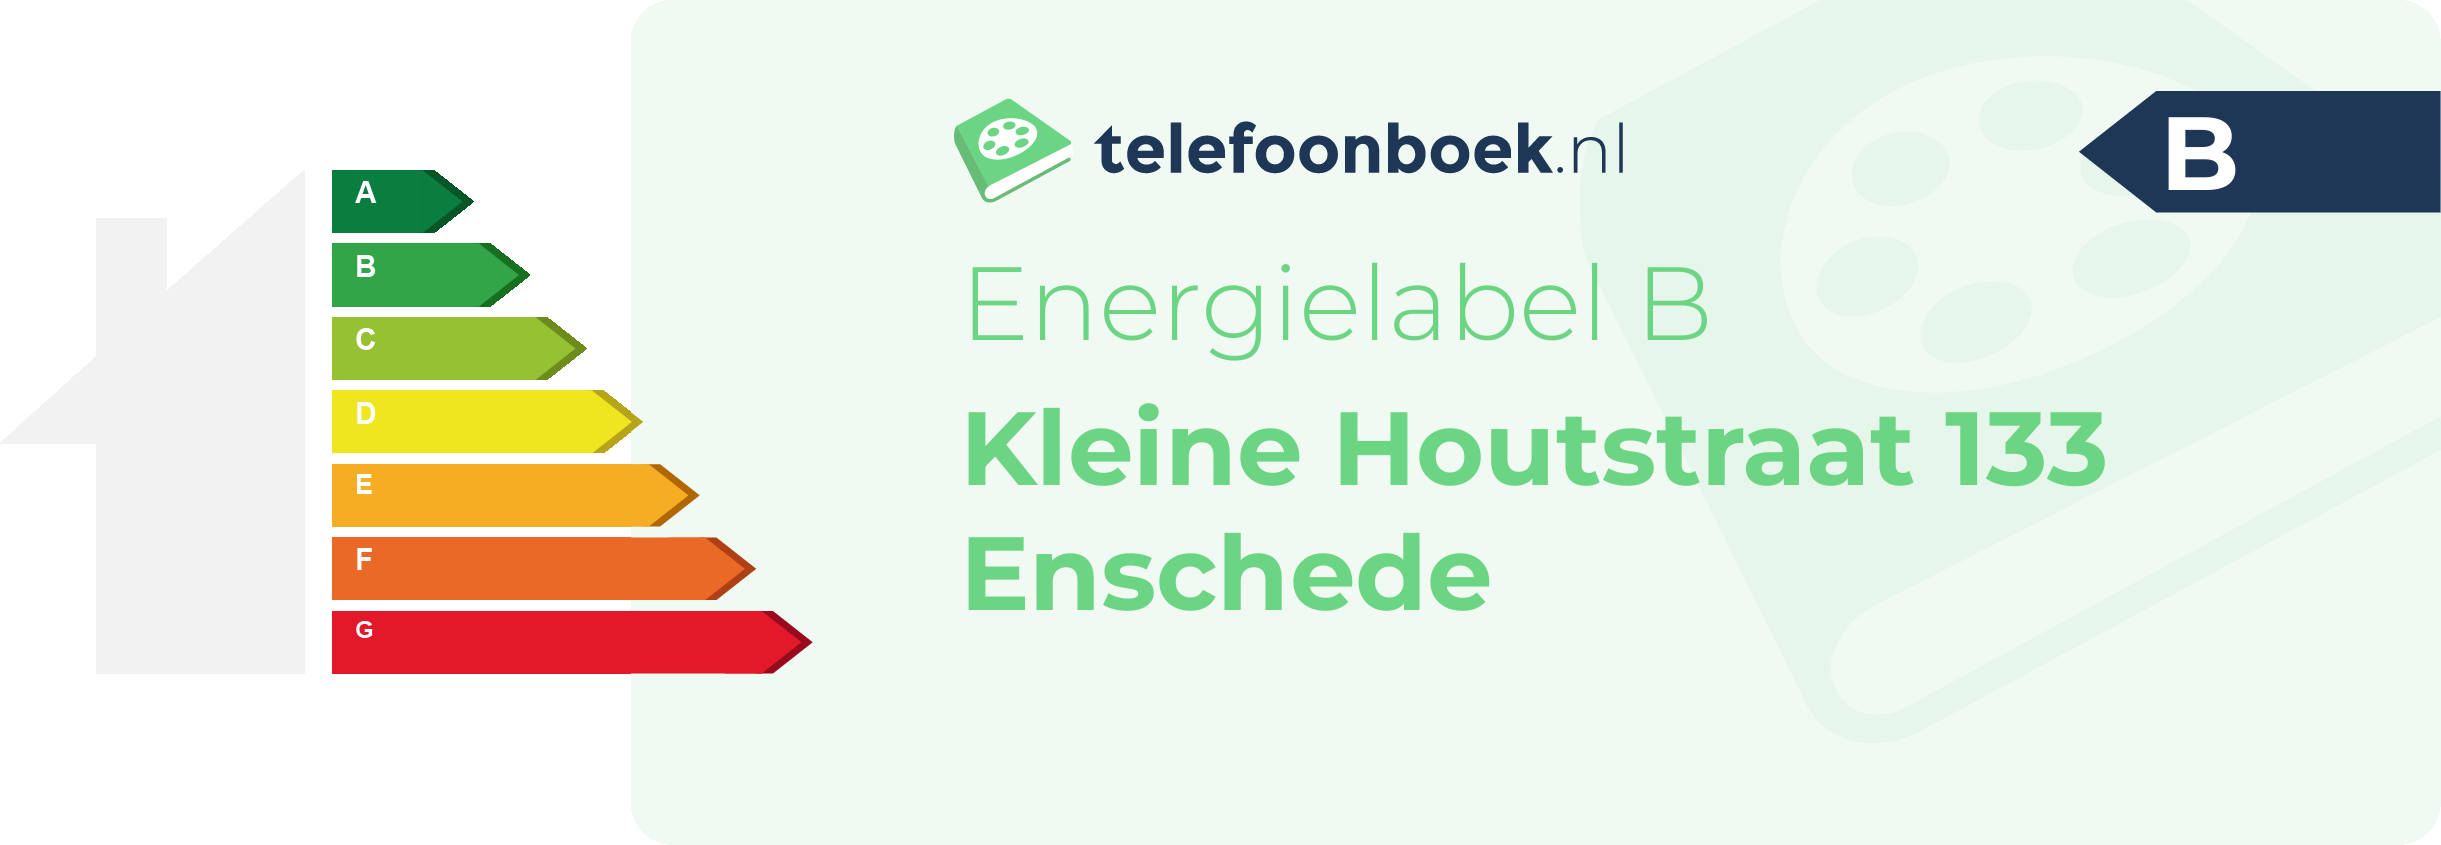 Energielabel Kleine Houtstraat 133 Enschede